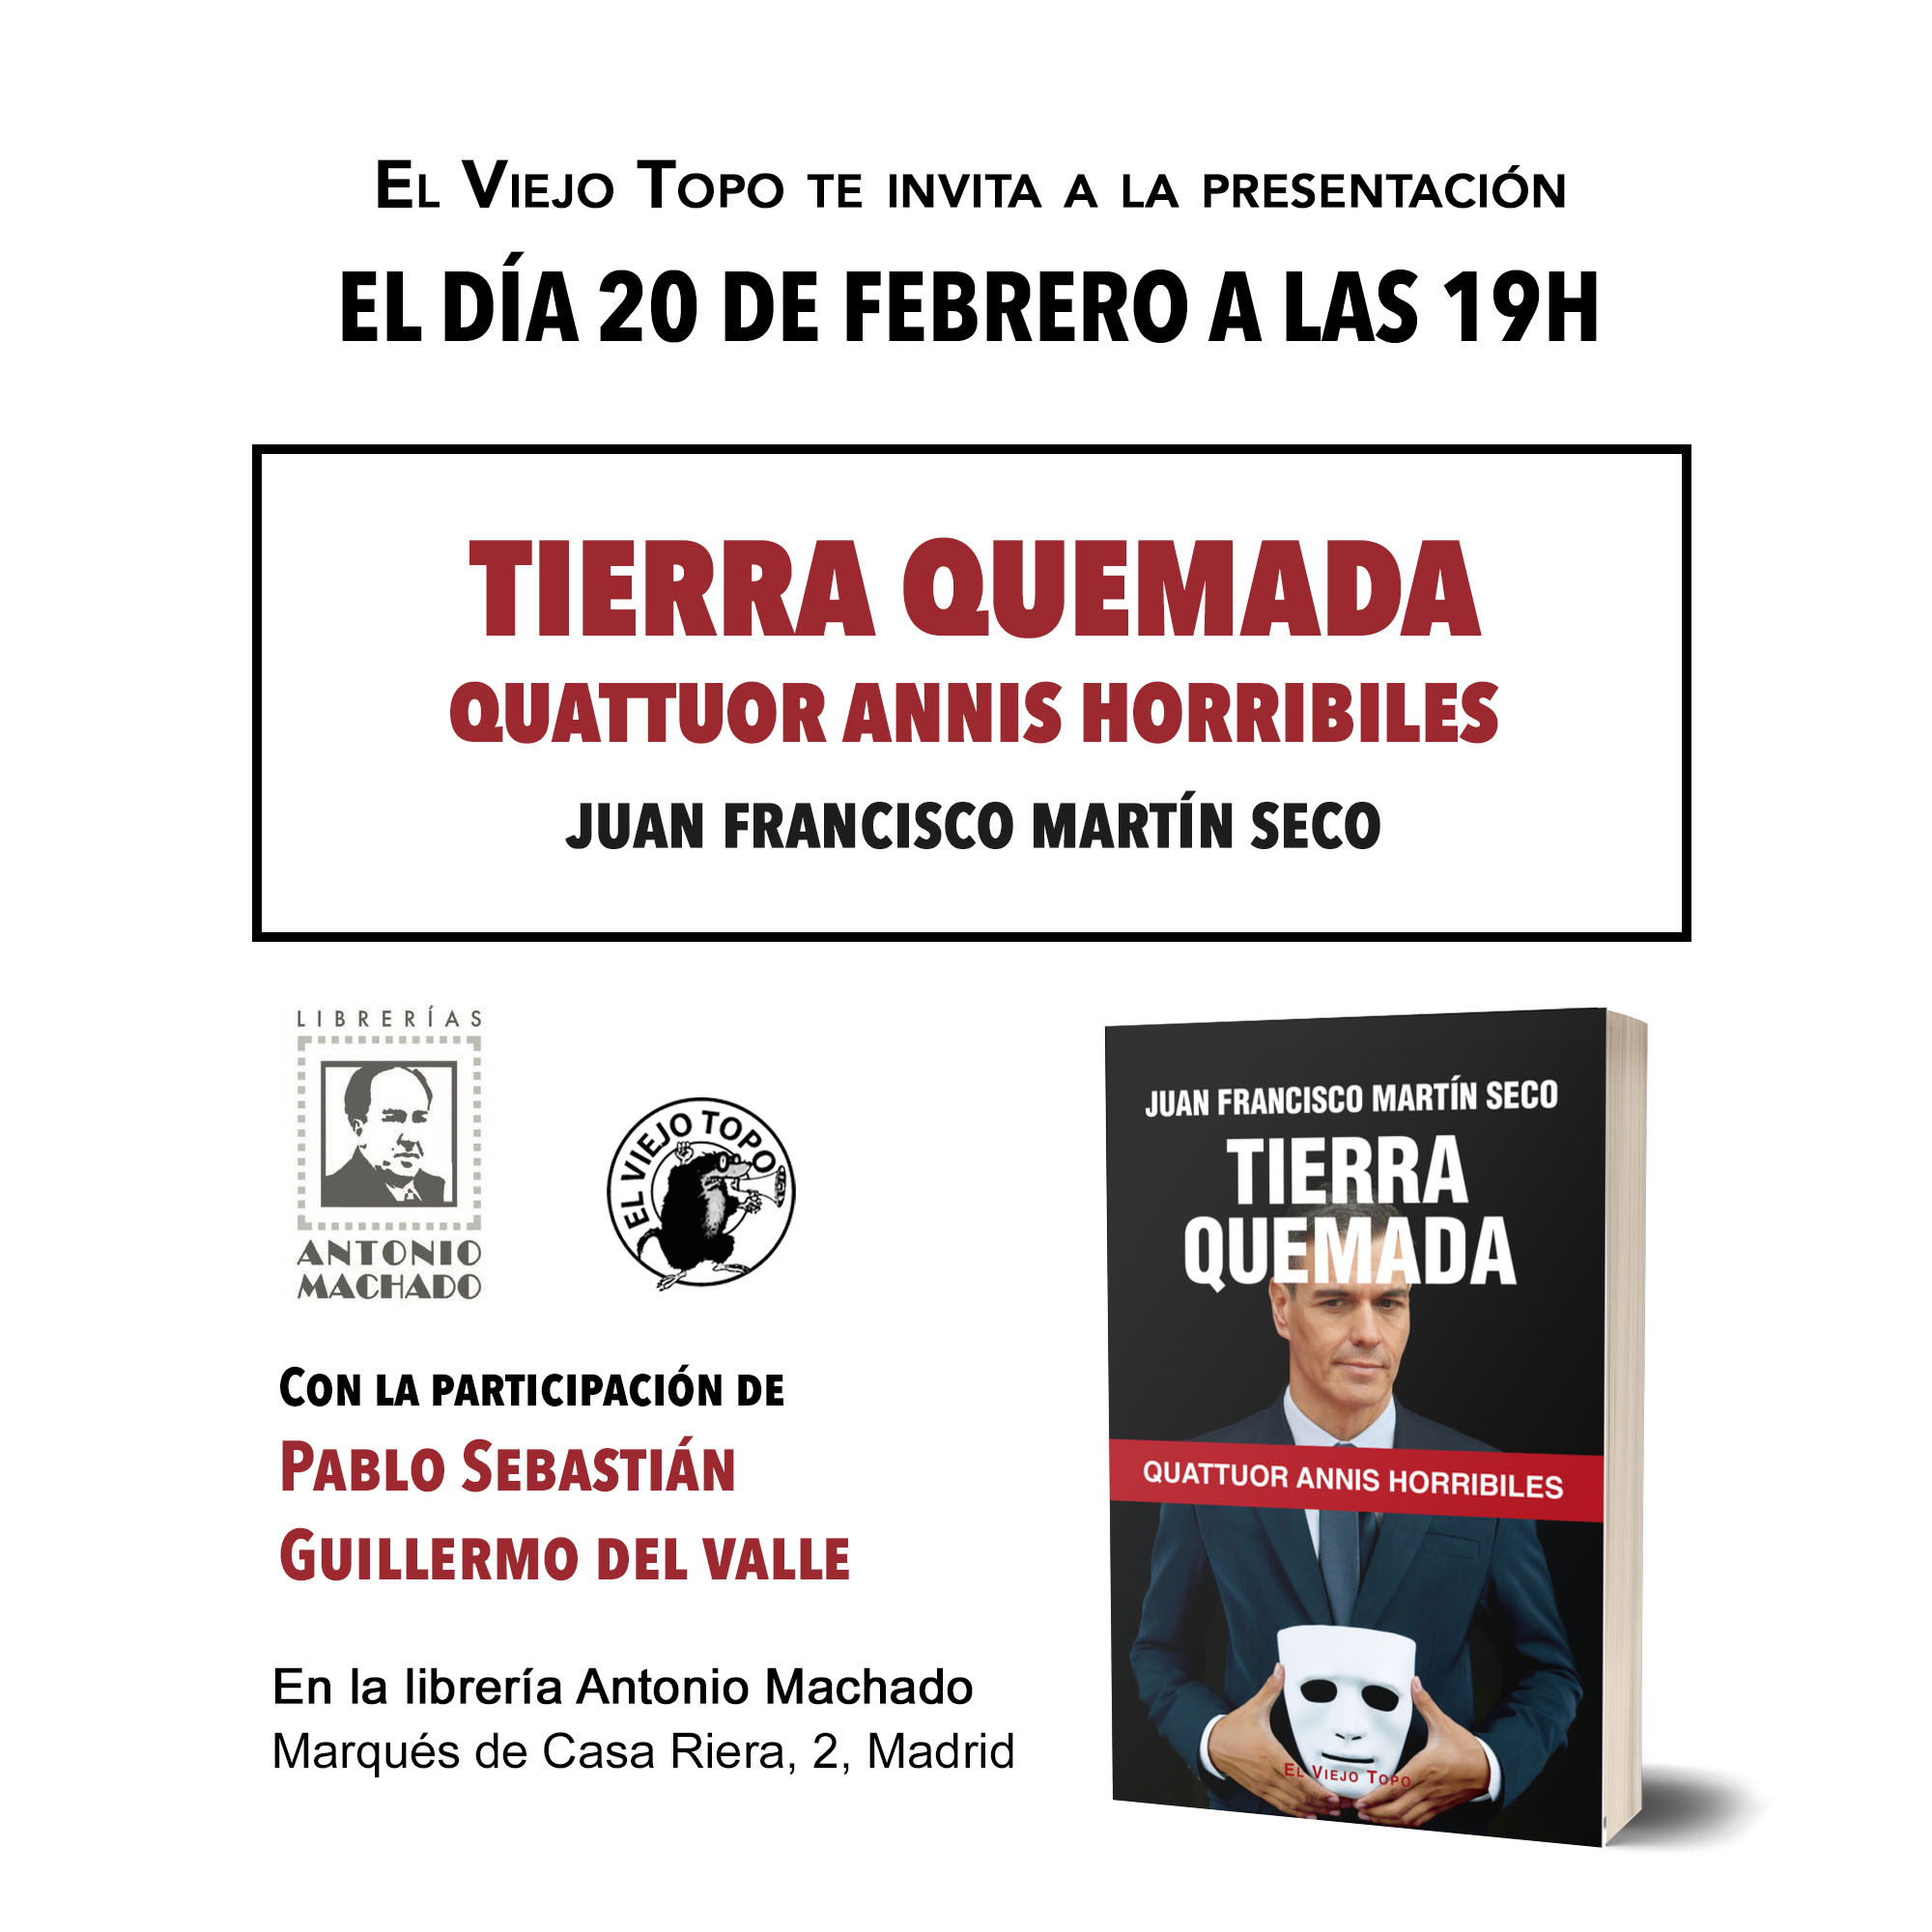 El Viejo Topo on X: "Presentamos en MADRID el nuevo libro "Tierra quemada",  de Juan Francisco Martín Seco. 🗣️Con @GuilledValle y Pablo Sebastián. 🗓️  Martes 20 de febrero a las 19h. 📍Librería